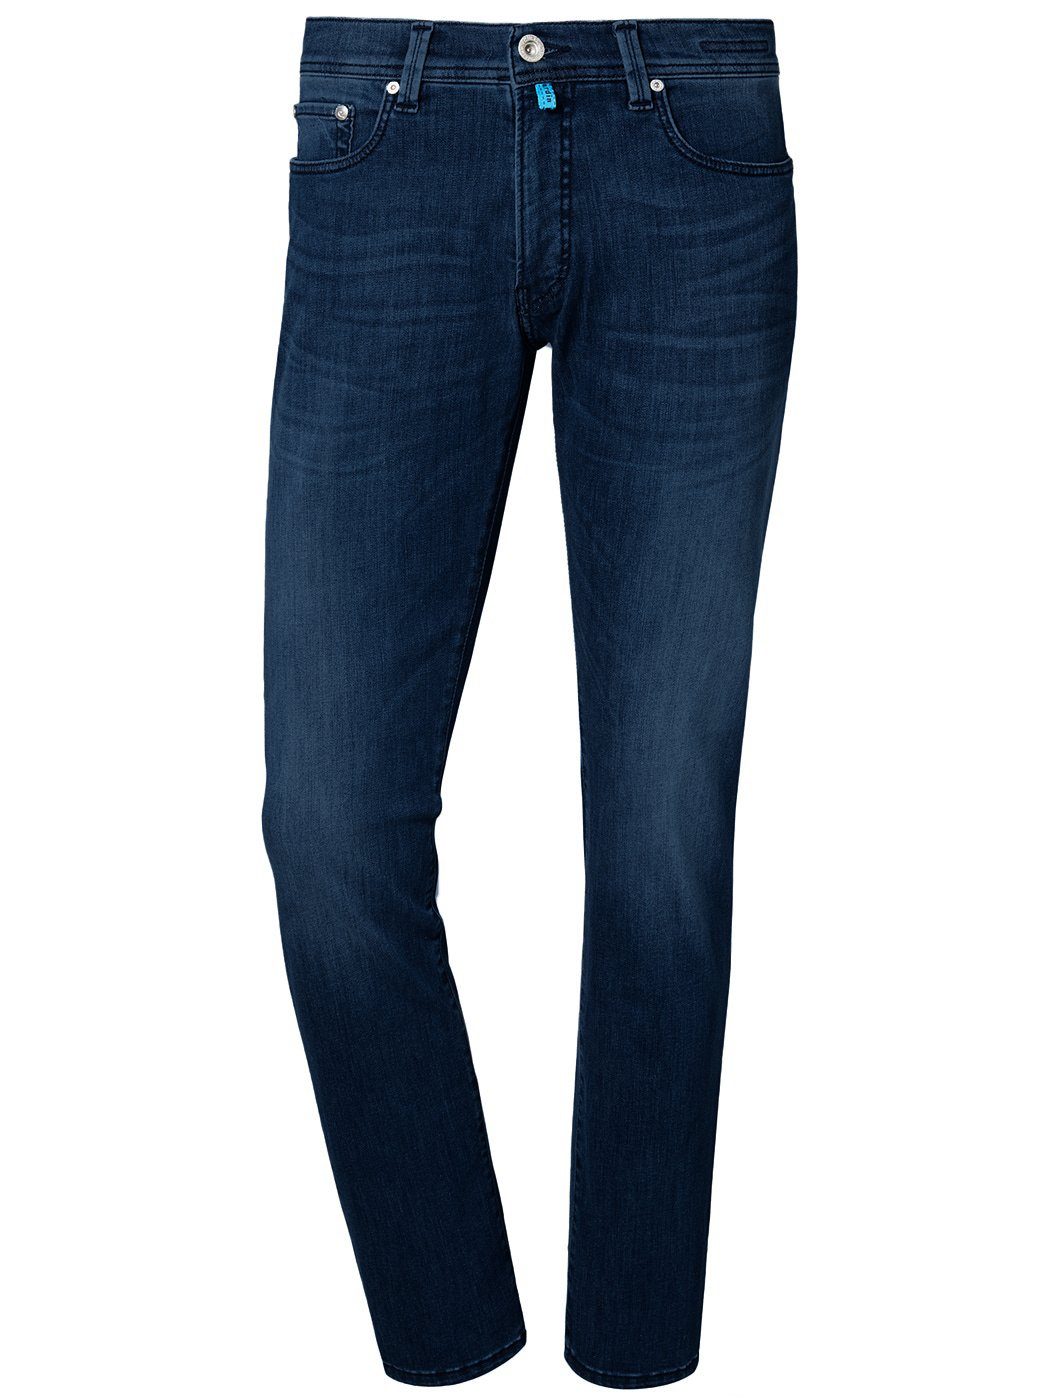 CARDIN FUTUREFLEX Pierre dark 5-Pocket-Jeans washed out blue LYON light 3451 Cardin PIERRE 8880.70